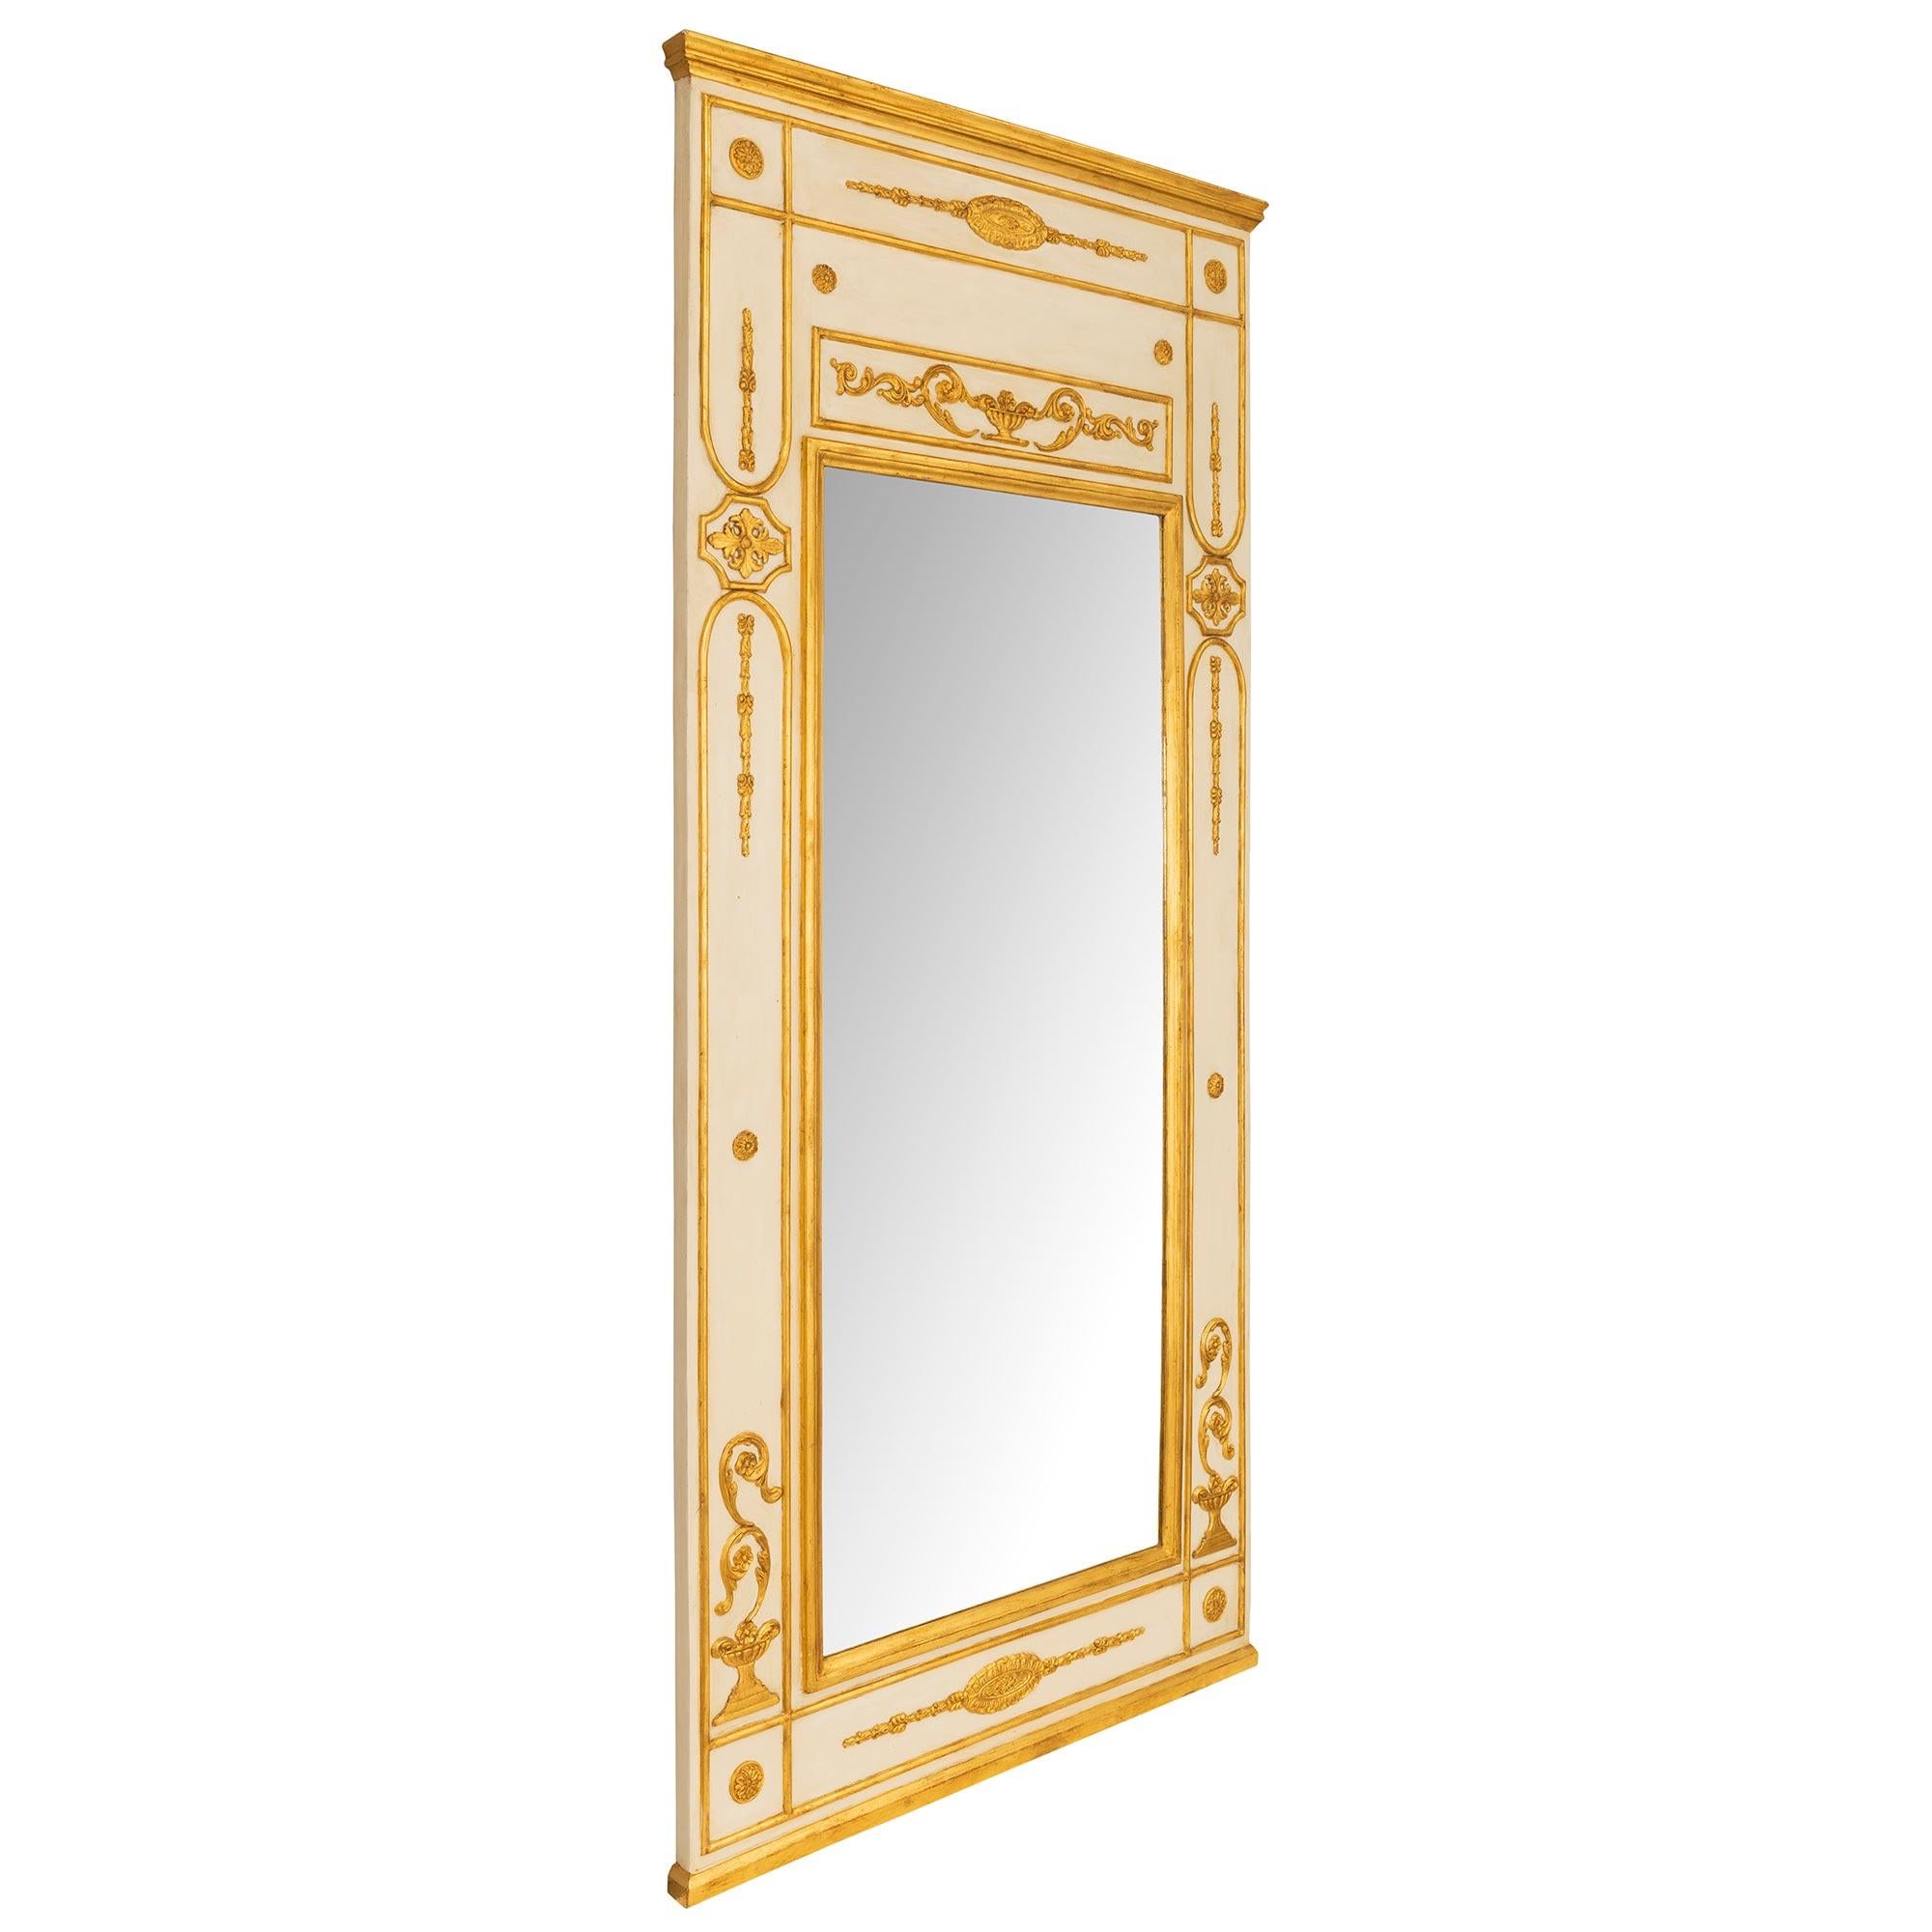 Impressionnante et très élégante paire de miroirs à trumeau en bois patiné et doré de style Louis XVI italien du XVIIIe siècle. Chaque miroir de grande taille conserve sa plaque d'origine, encadrée d'une fine bordure en bois doré tacheté. La base